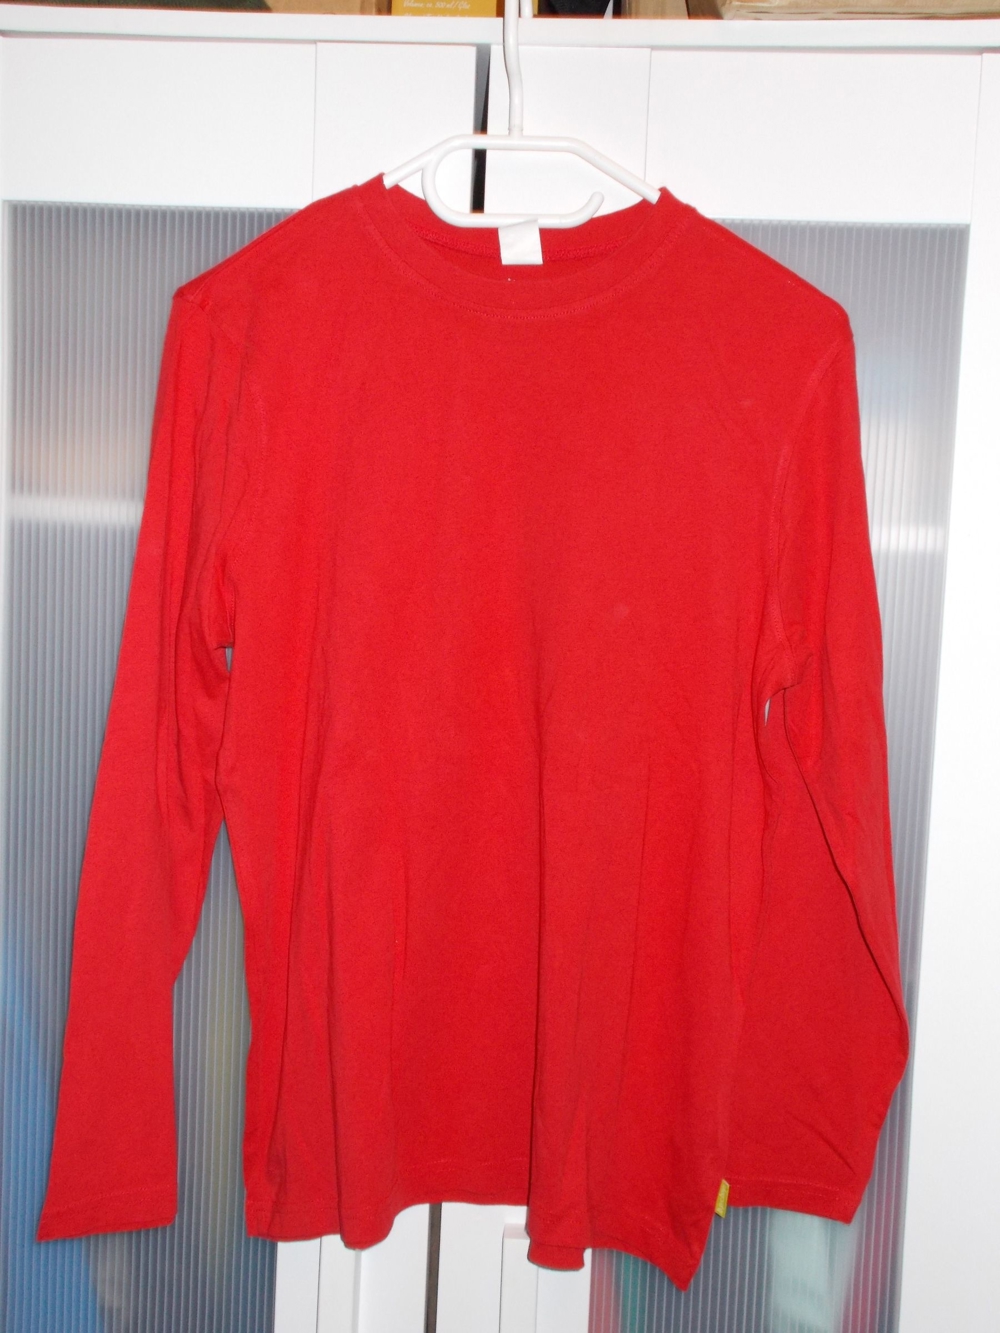 Jungen-Langarm-Shirt rot Gr. 164/170